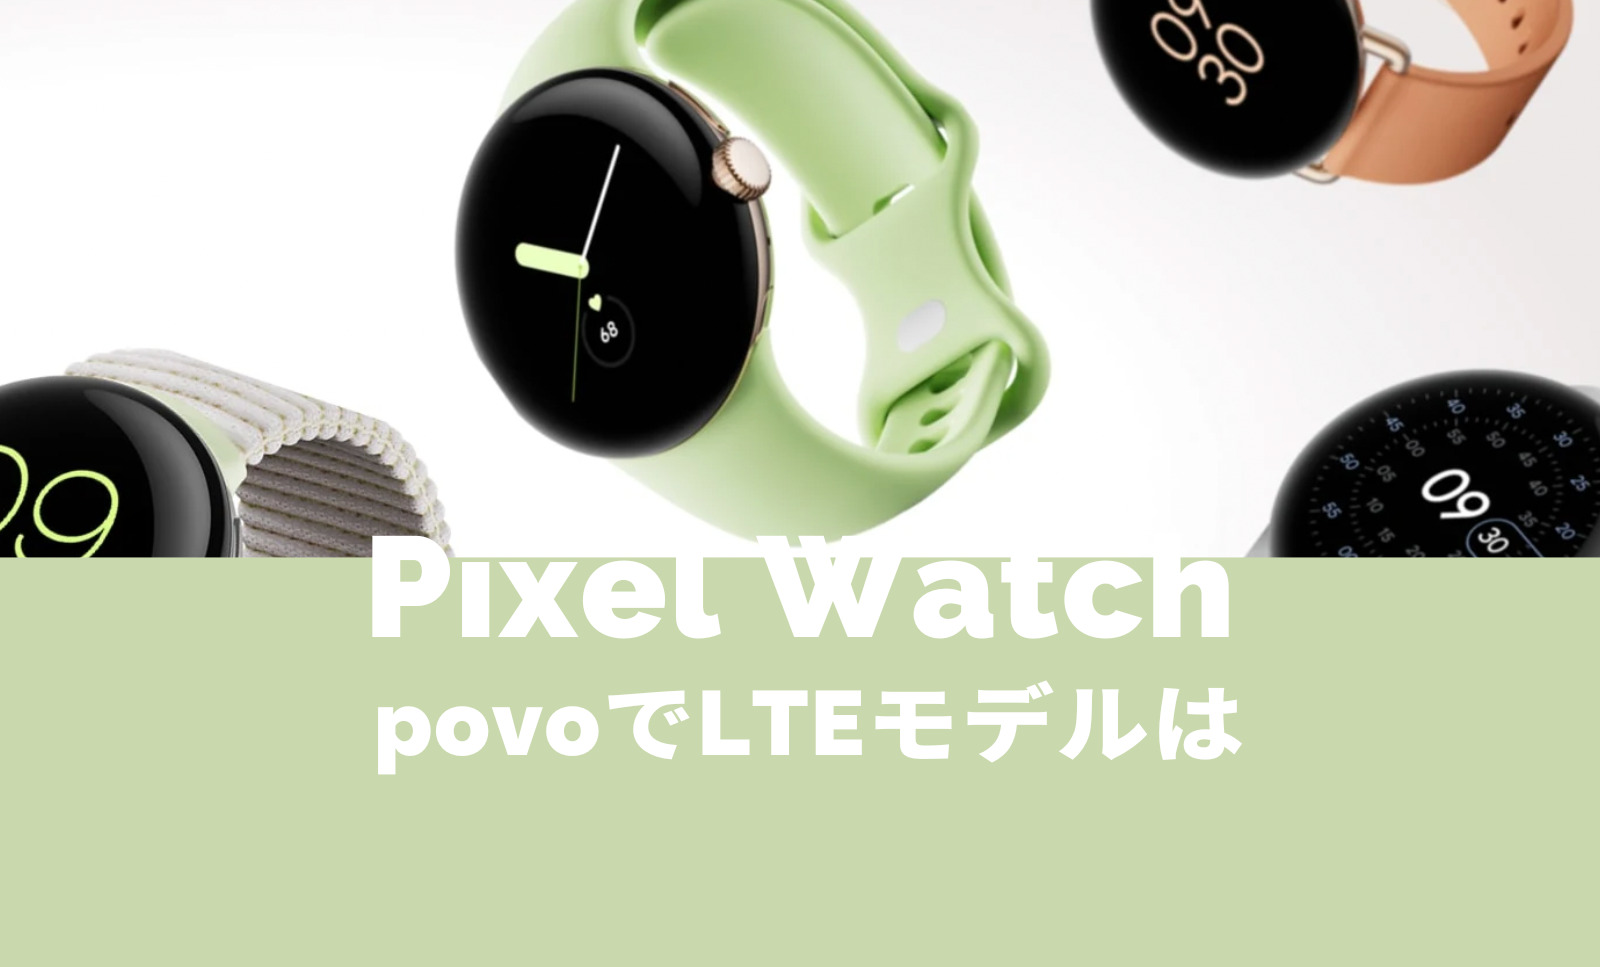 Pixel Watch 2(ピクセルウォッチ)はpovoで使える？LTEモデルは？【Google】のサムネイル画像